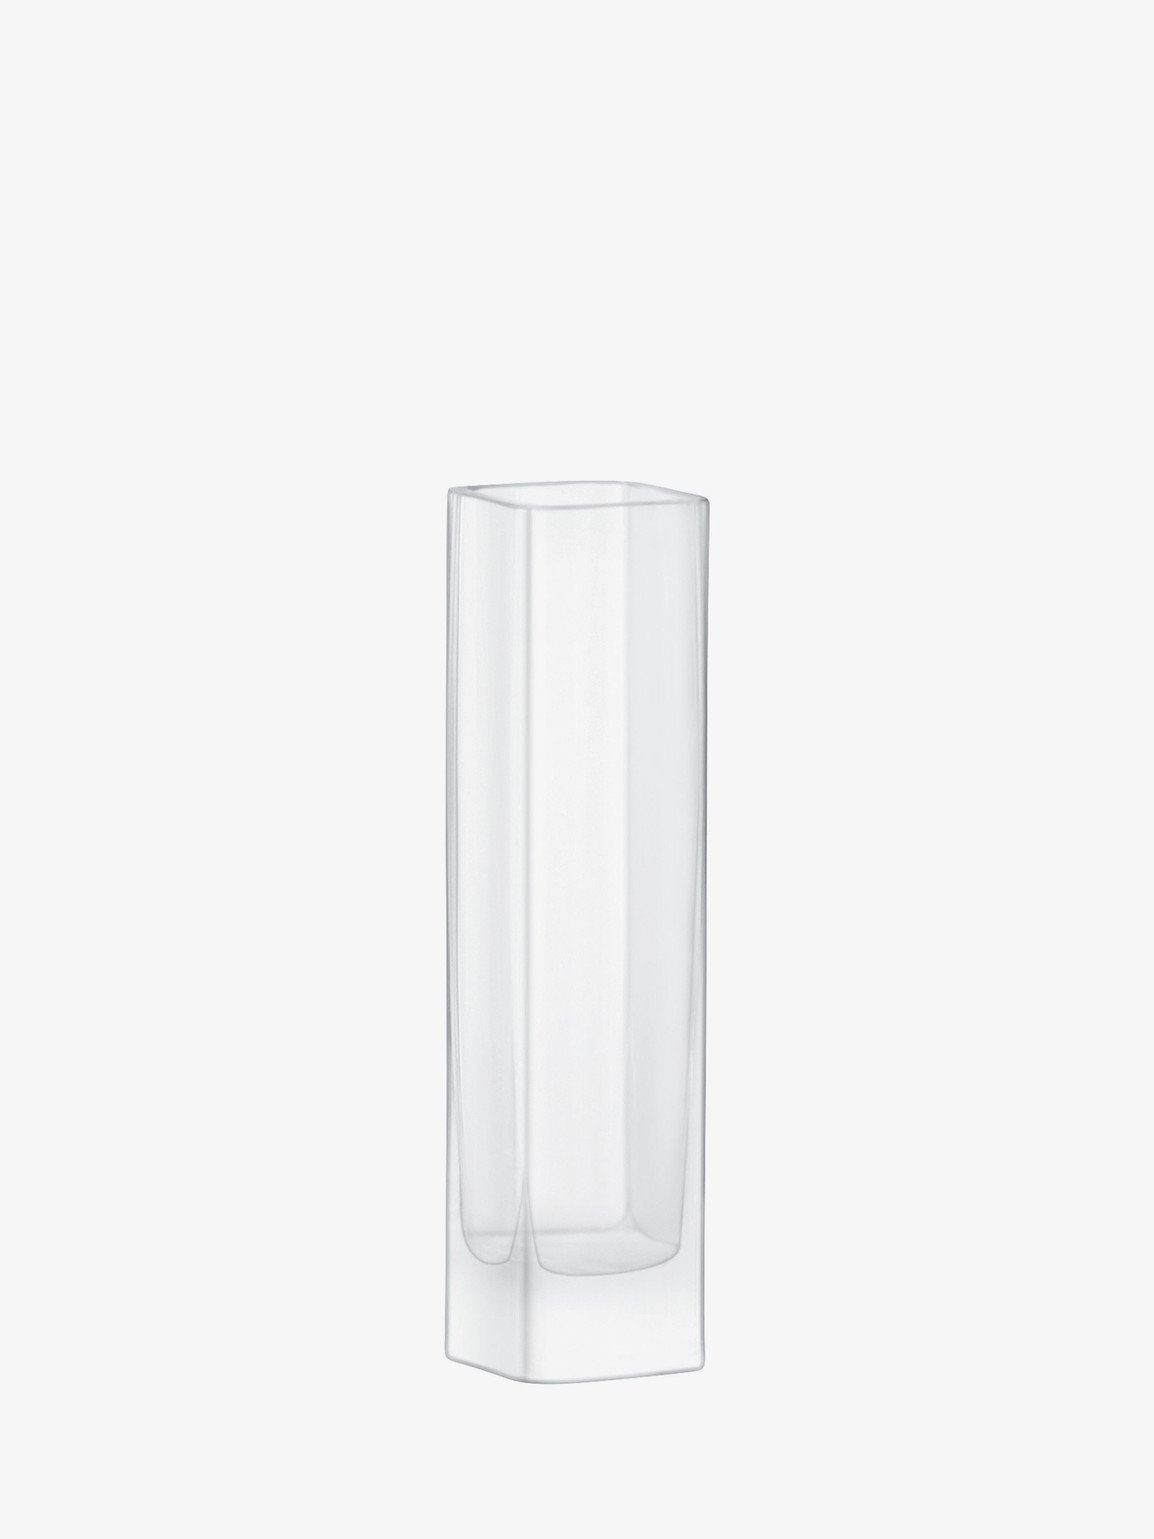 Modular Vase 20 x 5 x 5cm